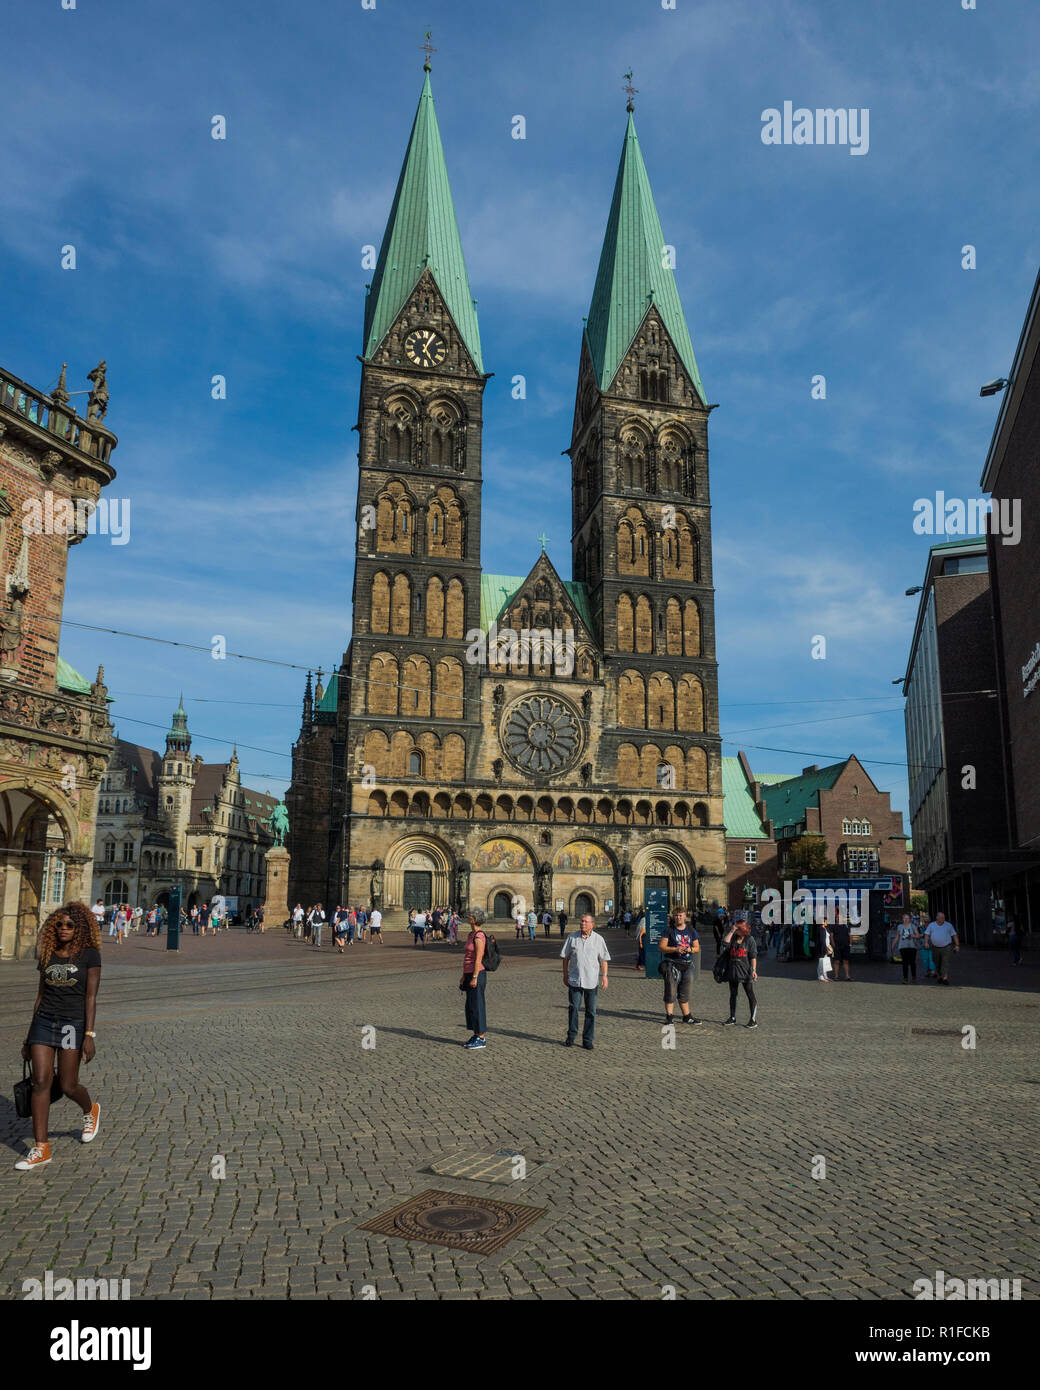 Marktplatz, Bremen. Deutschland Deutschland. Eine Szene auf dem gesamten Markt suchen Square auf die mittelalterliche Kirche. Es ist ein sonniger Tag, so gibt es viele touristische Urlauber aus erkunden und genießen die Sonne. Stockfoto